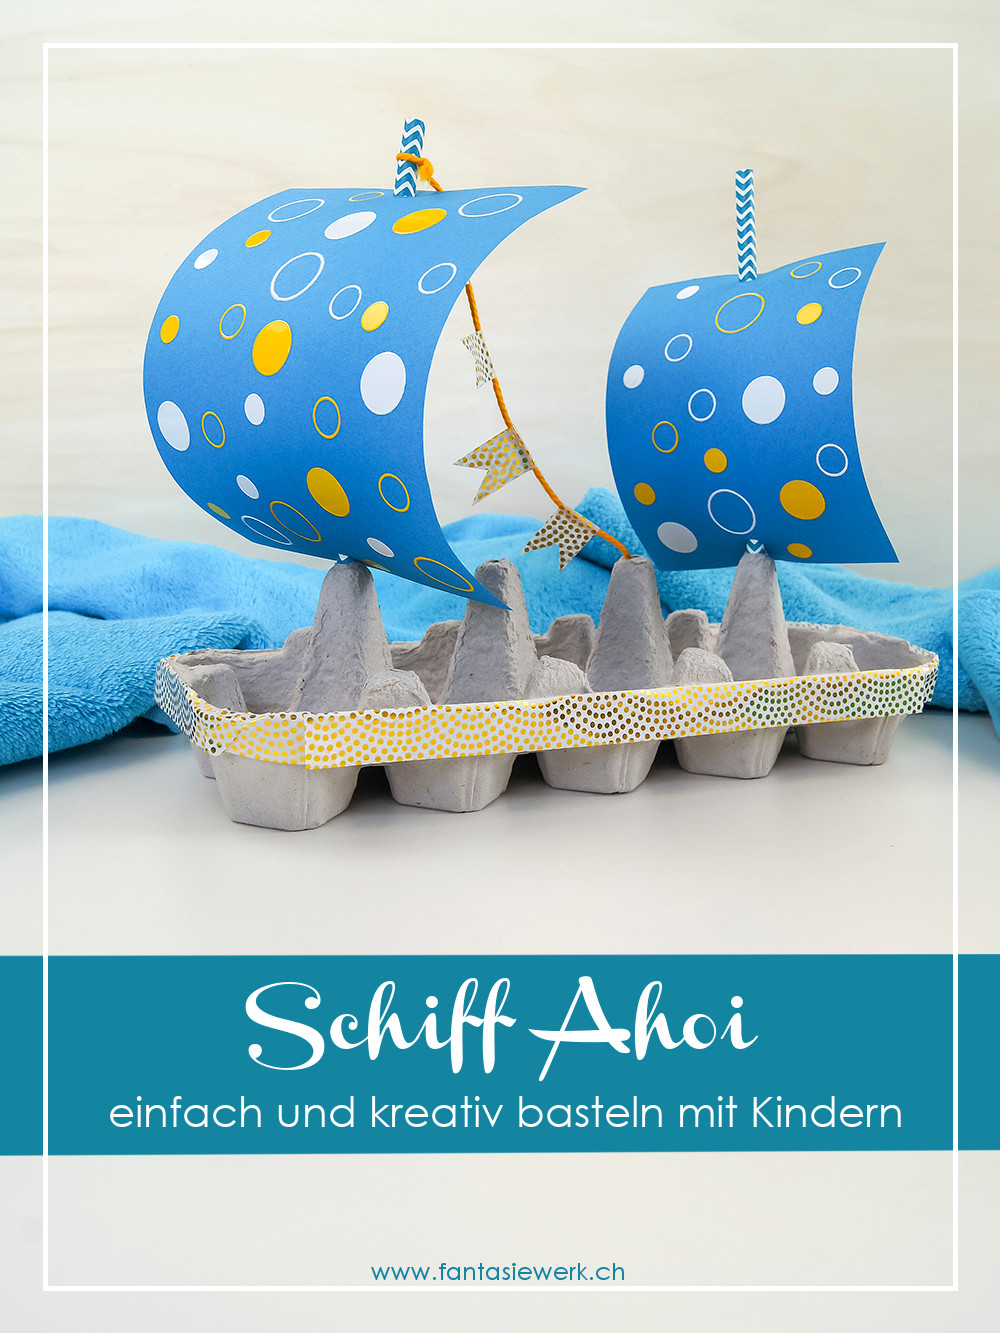 Schiff aus Eierkarton - Eine Bastelidee für Kleinkinder | kreativ mit Upcycling Materialien basteln und spielen | von Fantasiewerk